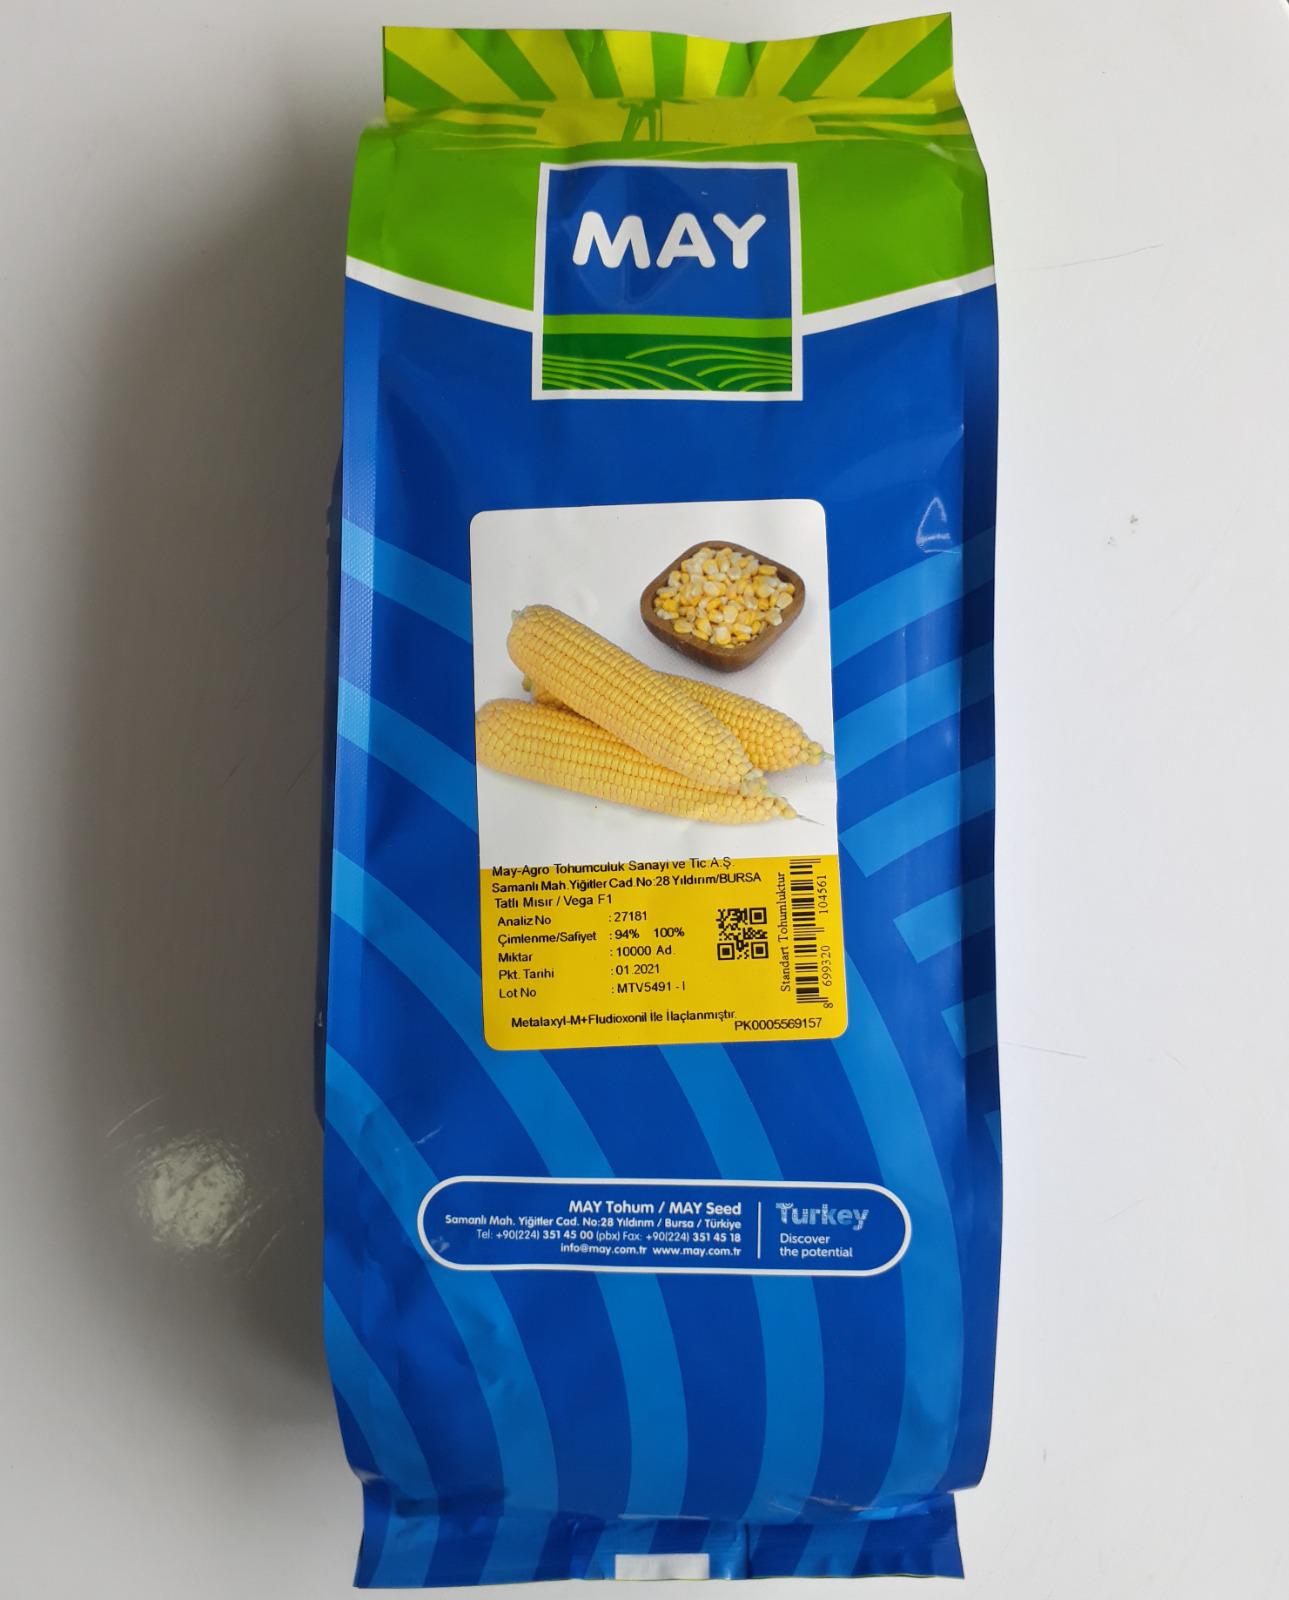 Mısır tohumu - ABDULLAH BAŞOĞUL abdullahbasogul69@gmail.com tarafından verilen satılık mısır tohumu ilanını ve diğer satılık mısır tohumu ilanlarını tarimziraat.com adresinde bulabilirsiniz